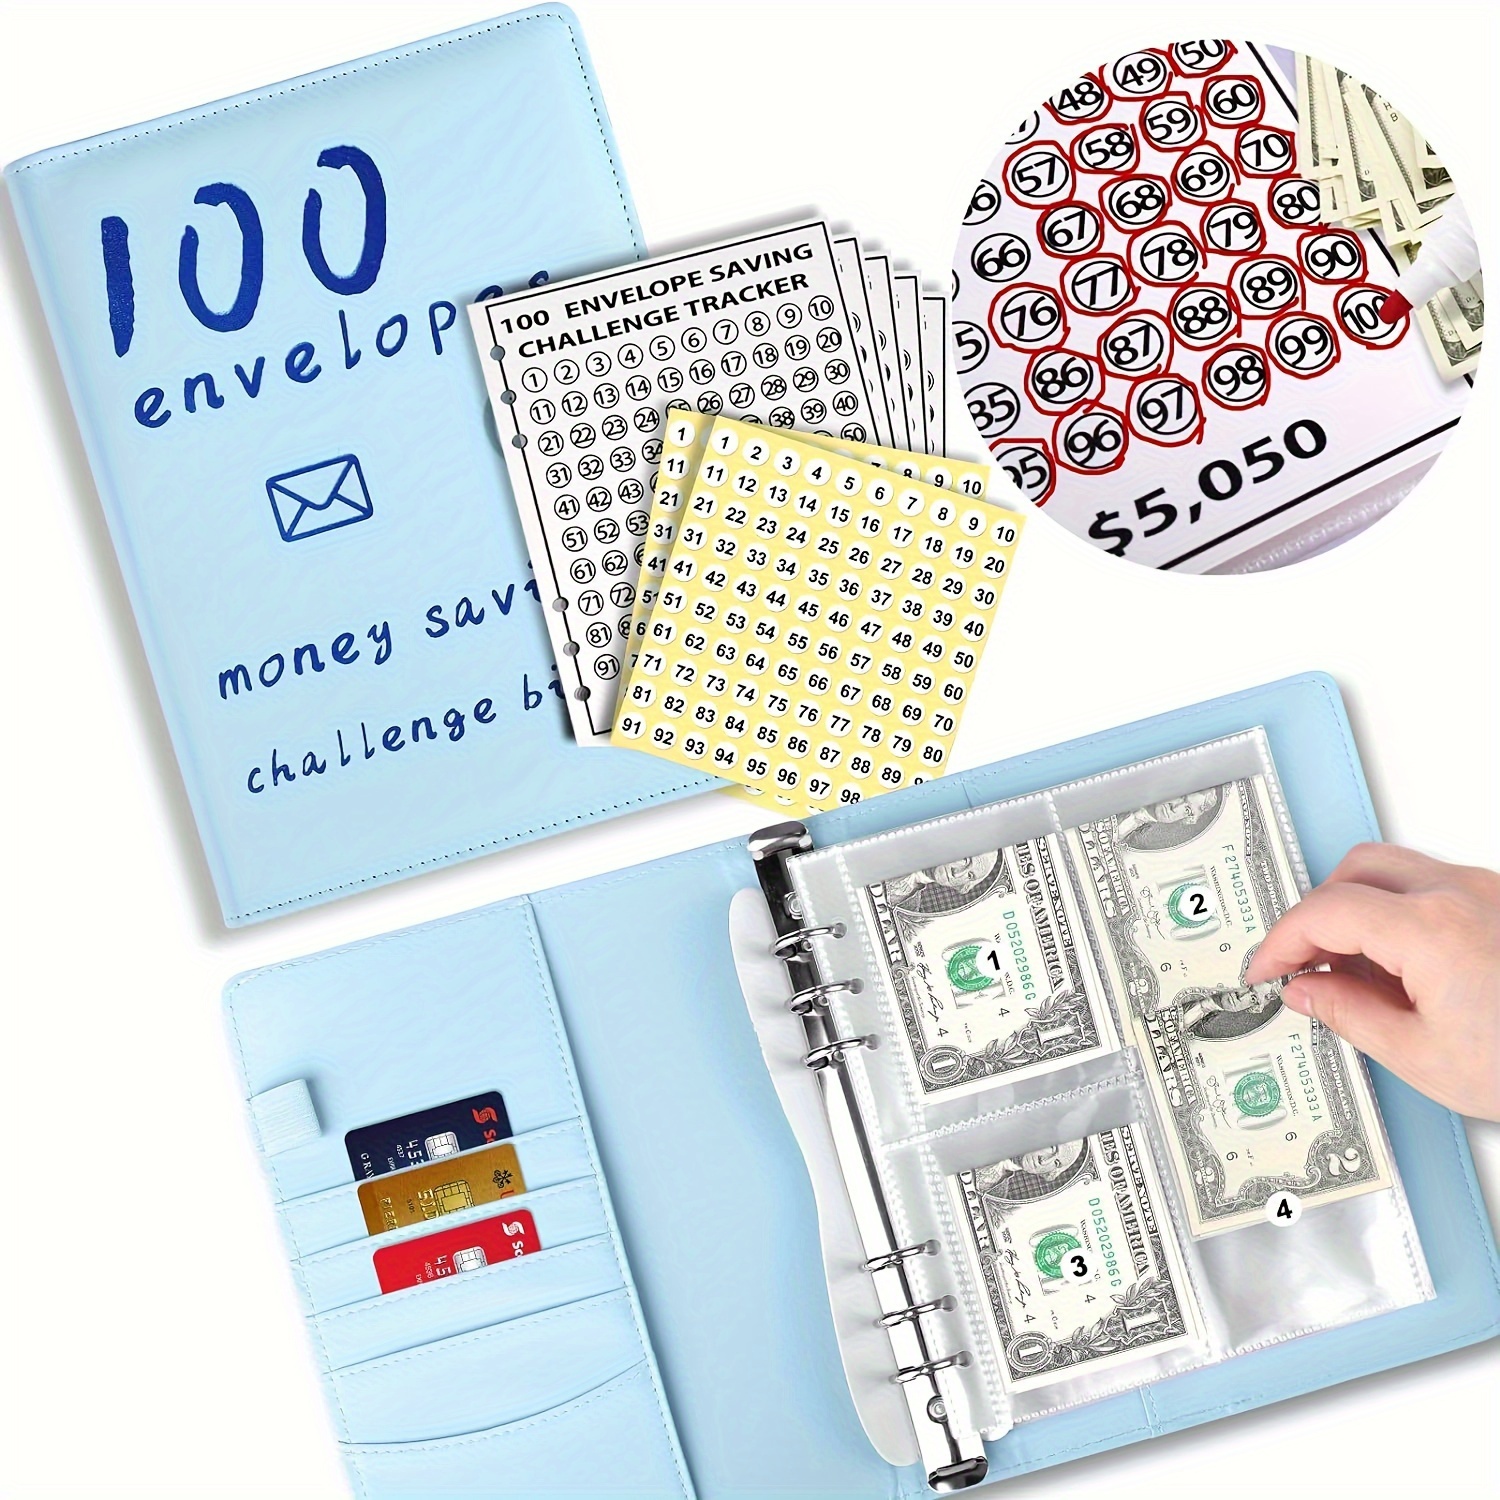 Desafío de ahorro de dinero de 100 sobres - Juego de cajas de desafío de  100 sobres 2023, forma fácil y divertida de ahorrar $5,050 en 100 días